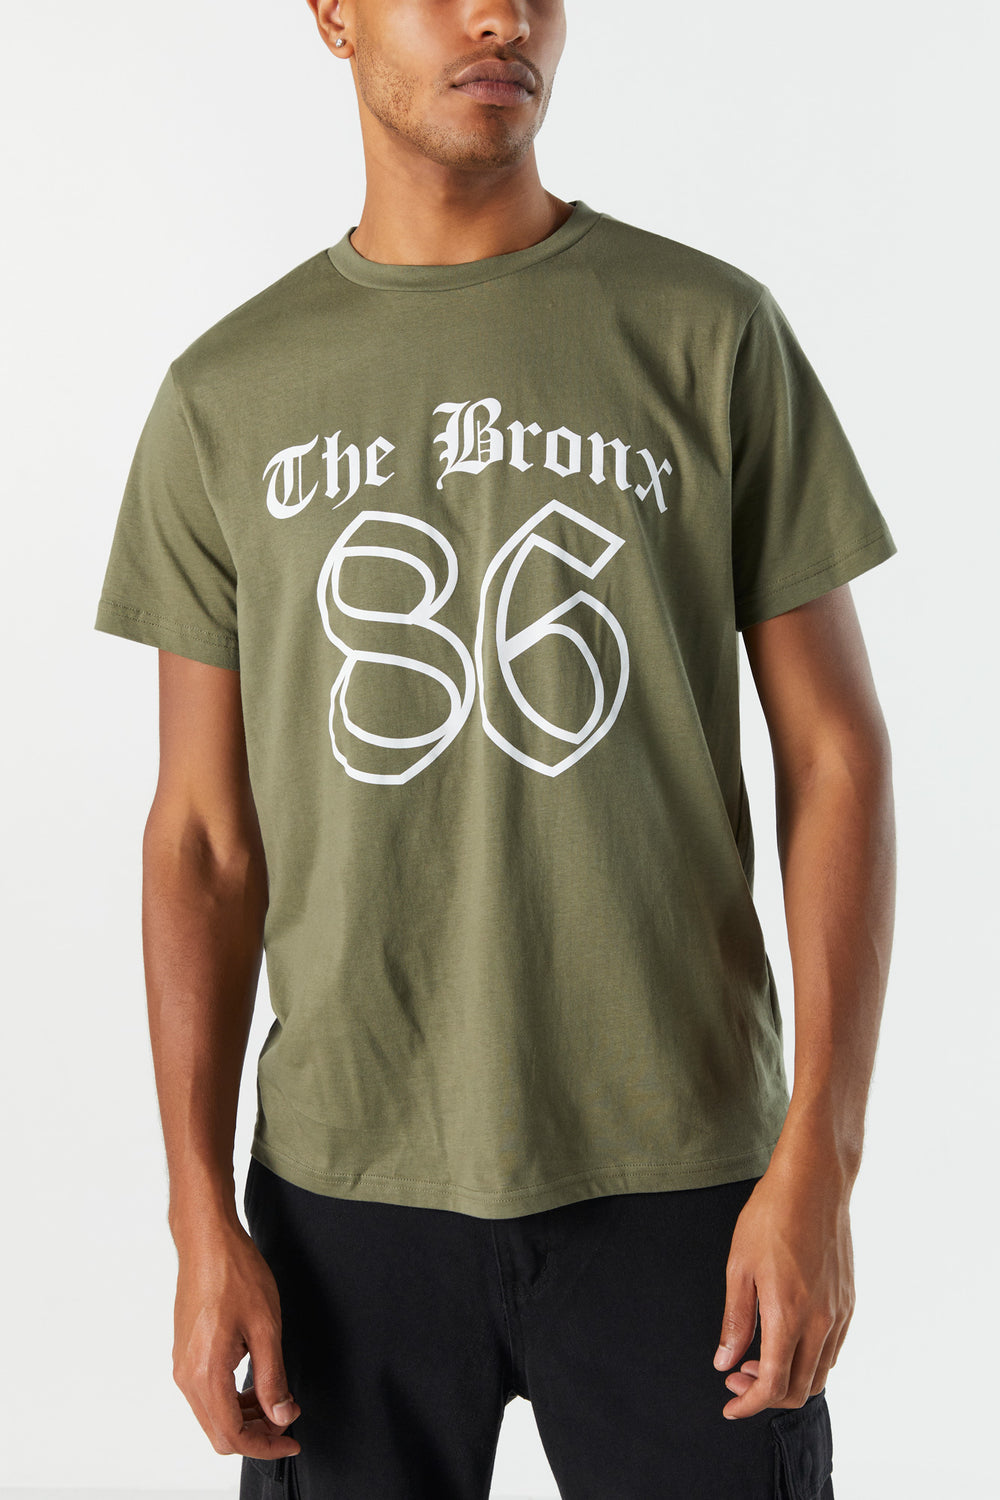 The Bronx Graphic T-Shirt The Bronx Graphic T-Shirt 2